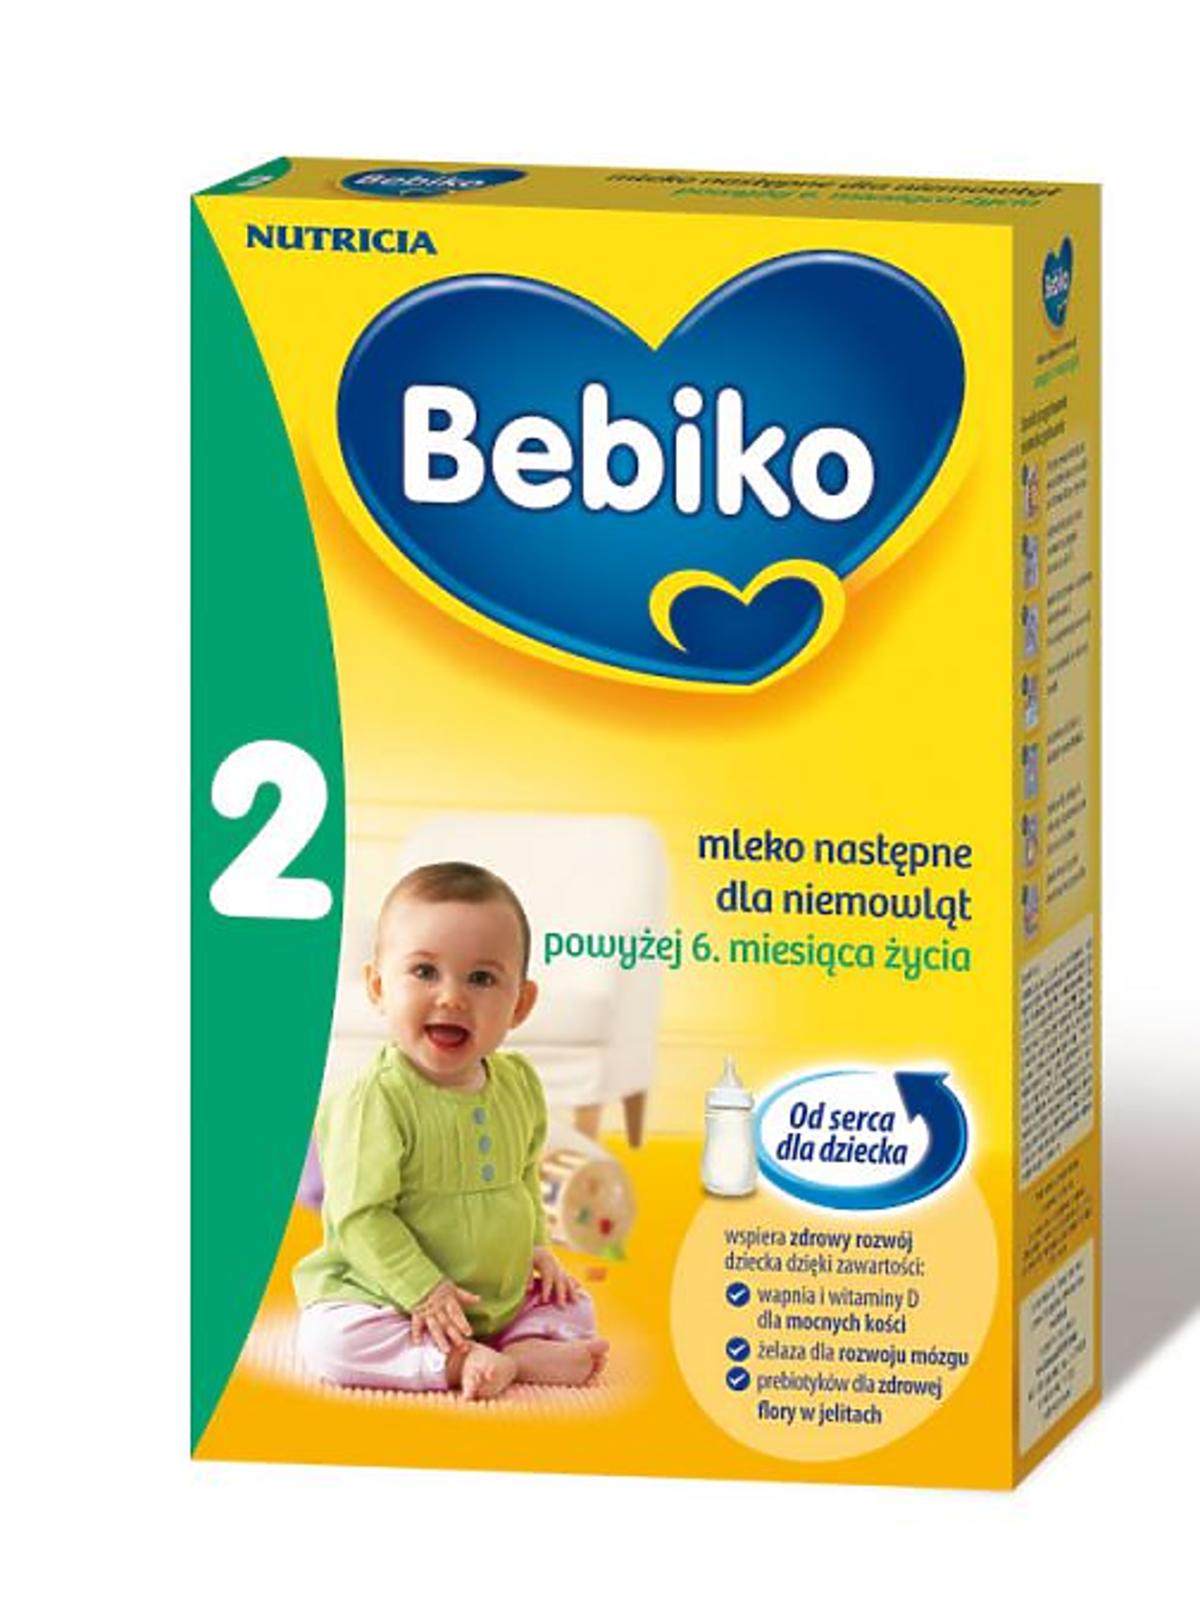 Bebiko-2.jpg